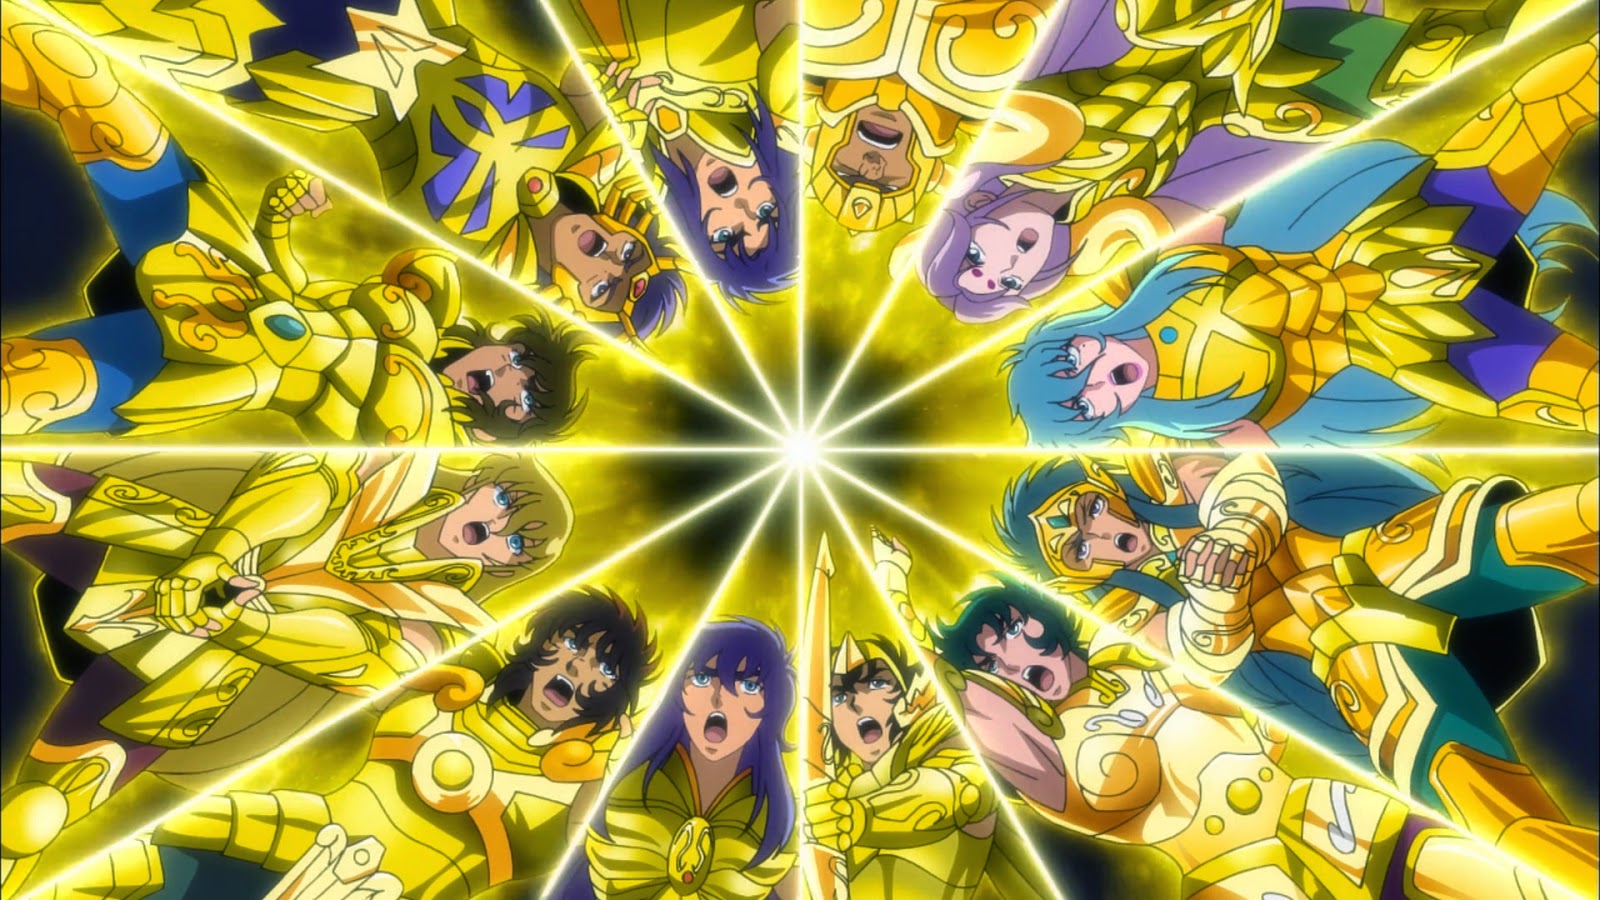 Os Cavaleiros do Zodíaco: Alma de Ouro – Dublado Episódio 12 - Anime HD -  Animes Online Gratis!